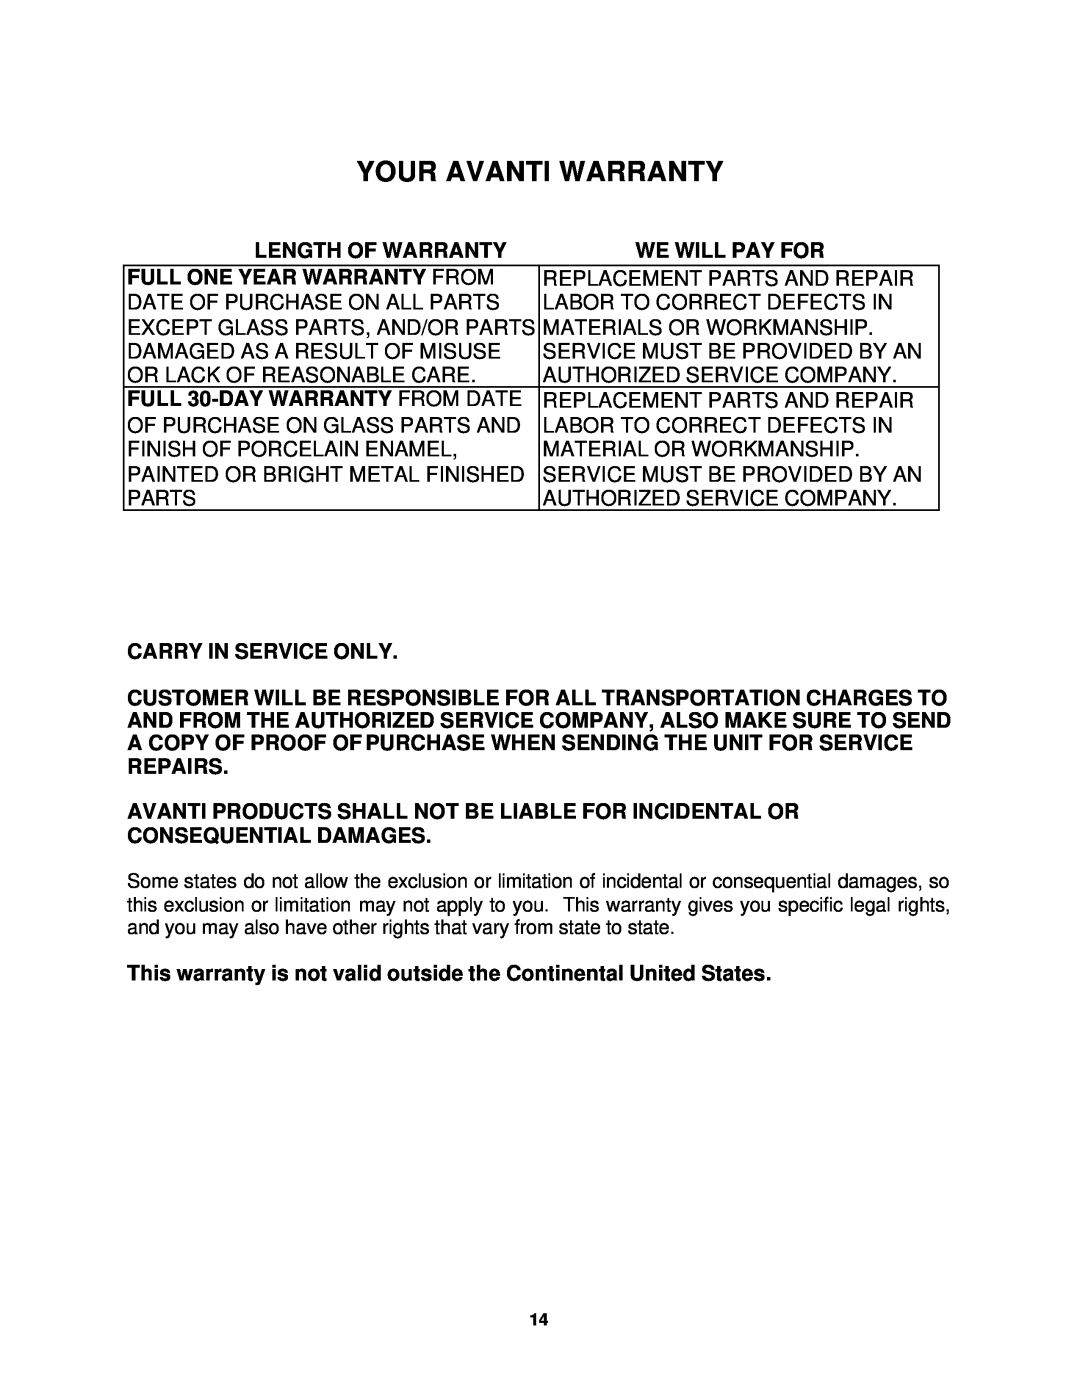 Avanti T-18 instruction manual Your Avanti Warranty 